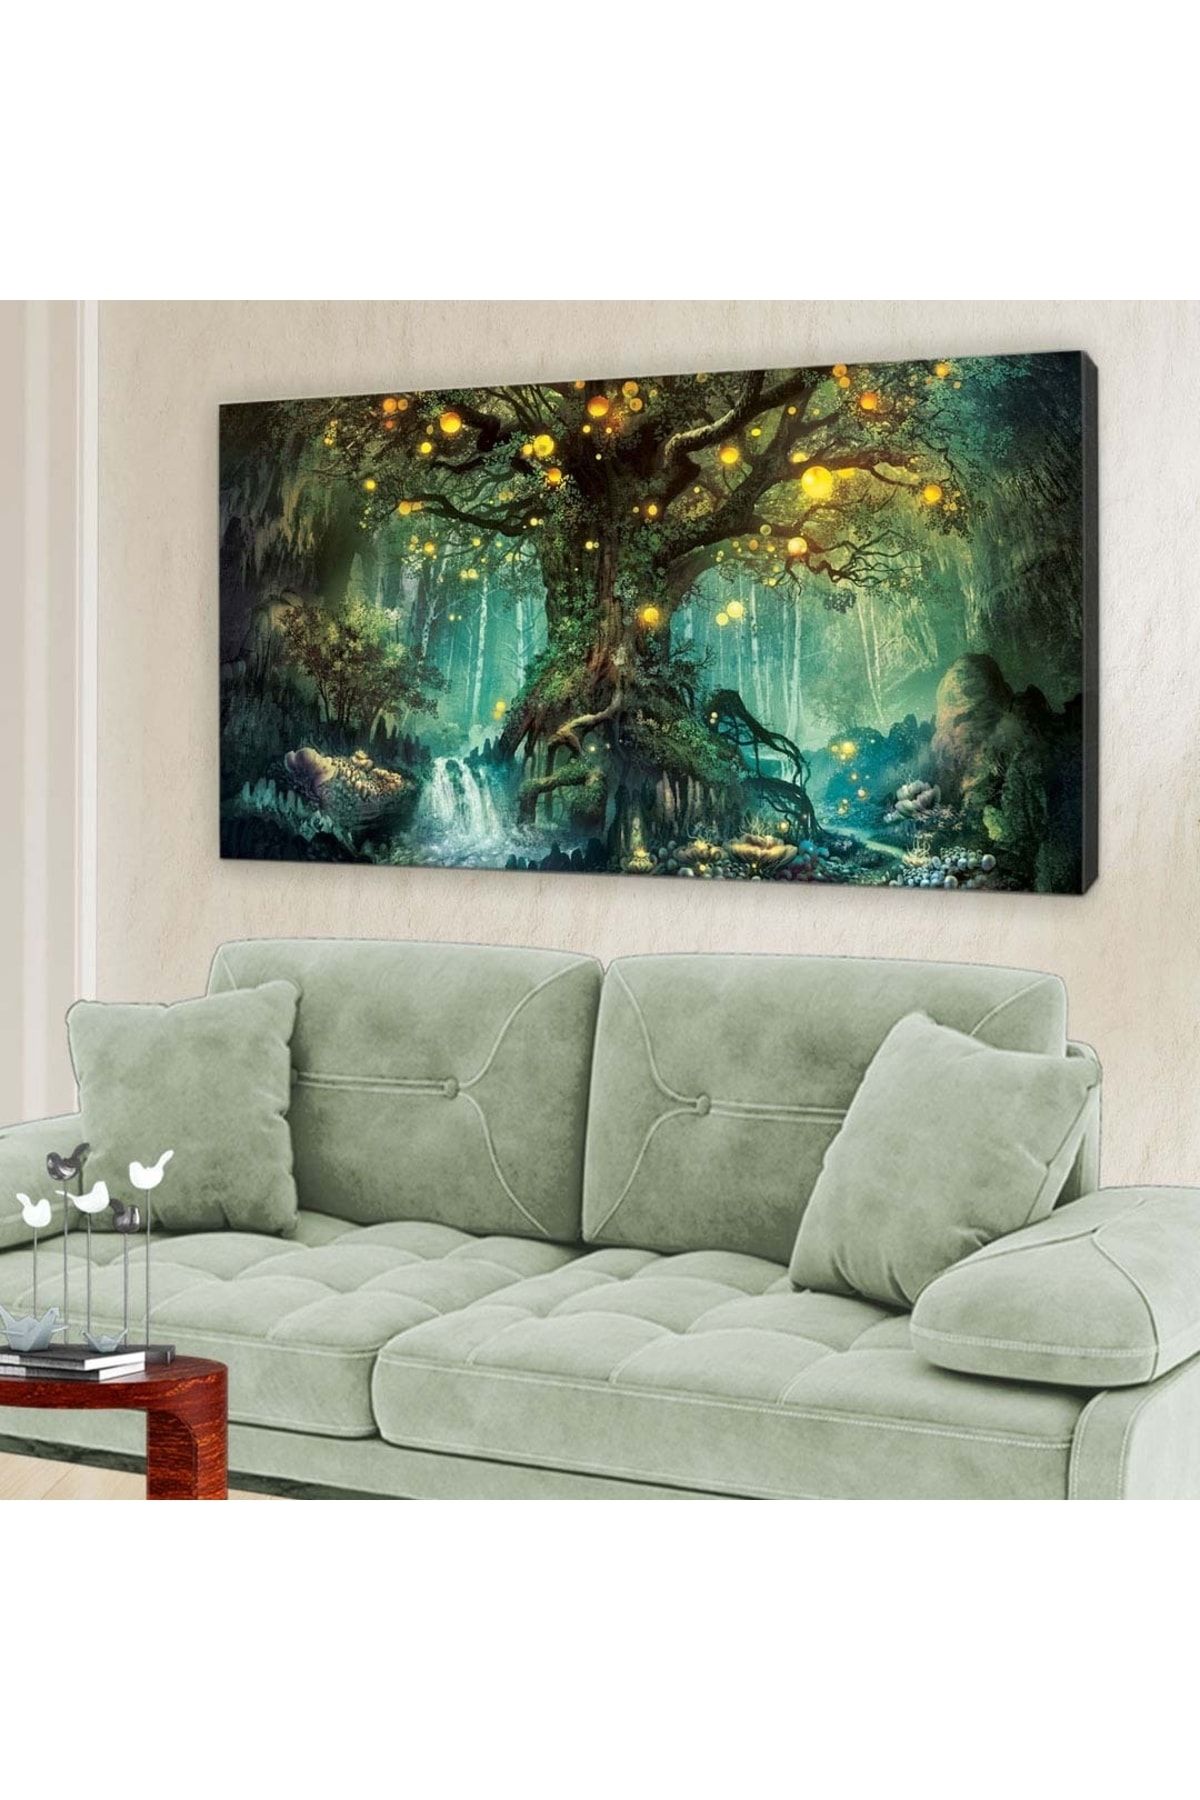 hanhomeart Yeşil Işıltılı Ağaç - Kanvas Tablo 60x120cm-hykvs-423